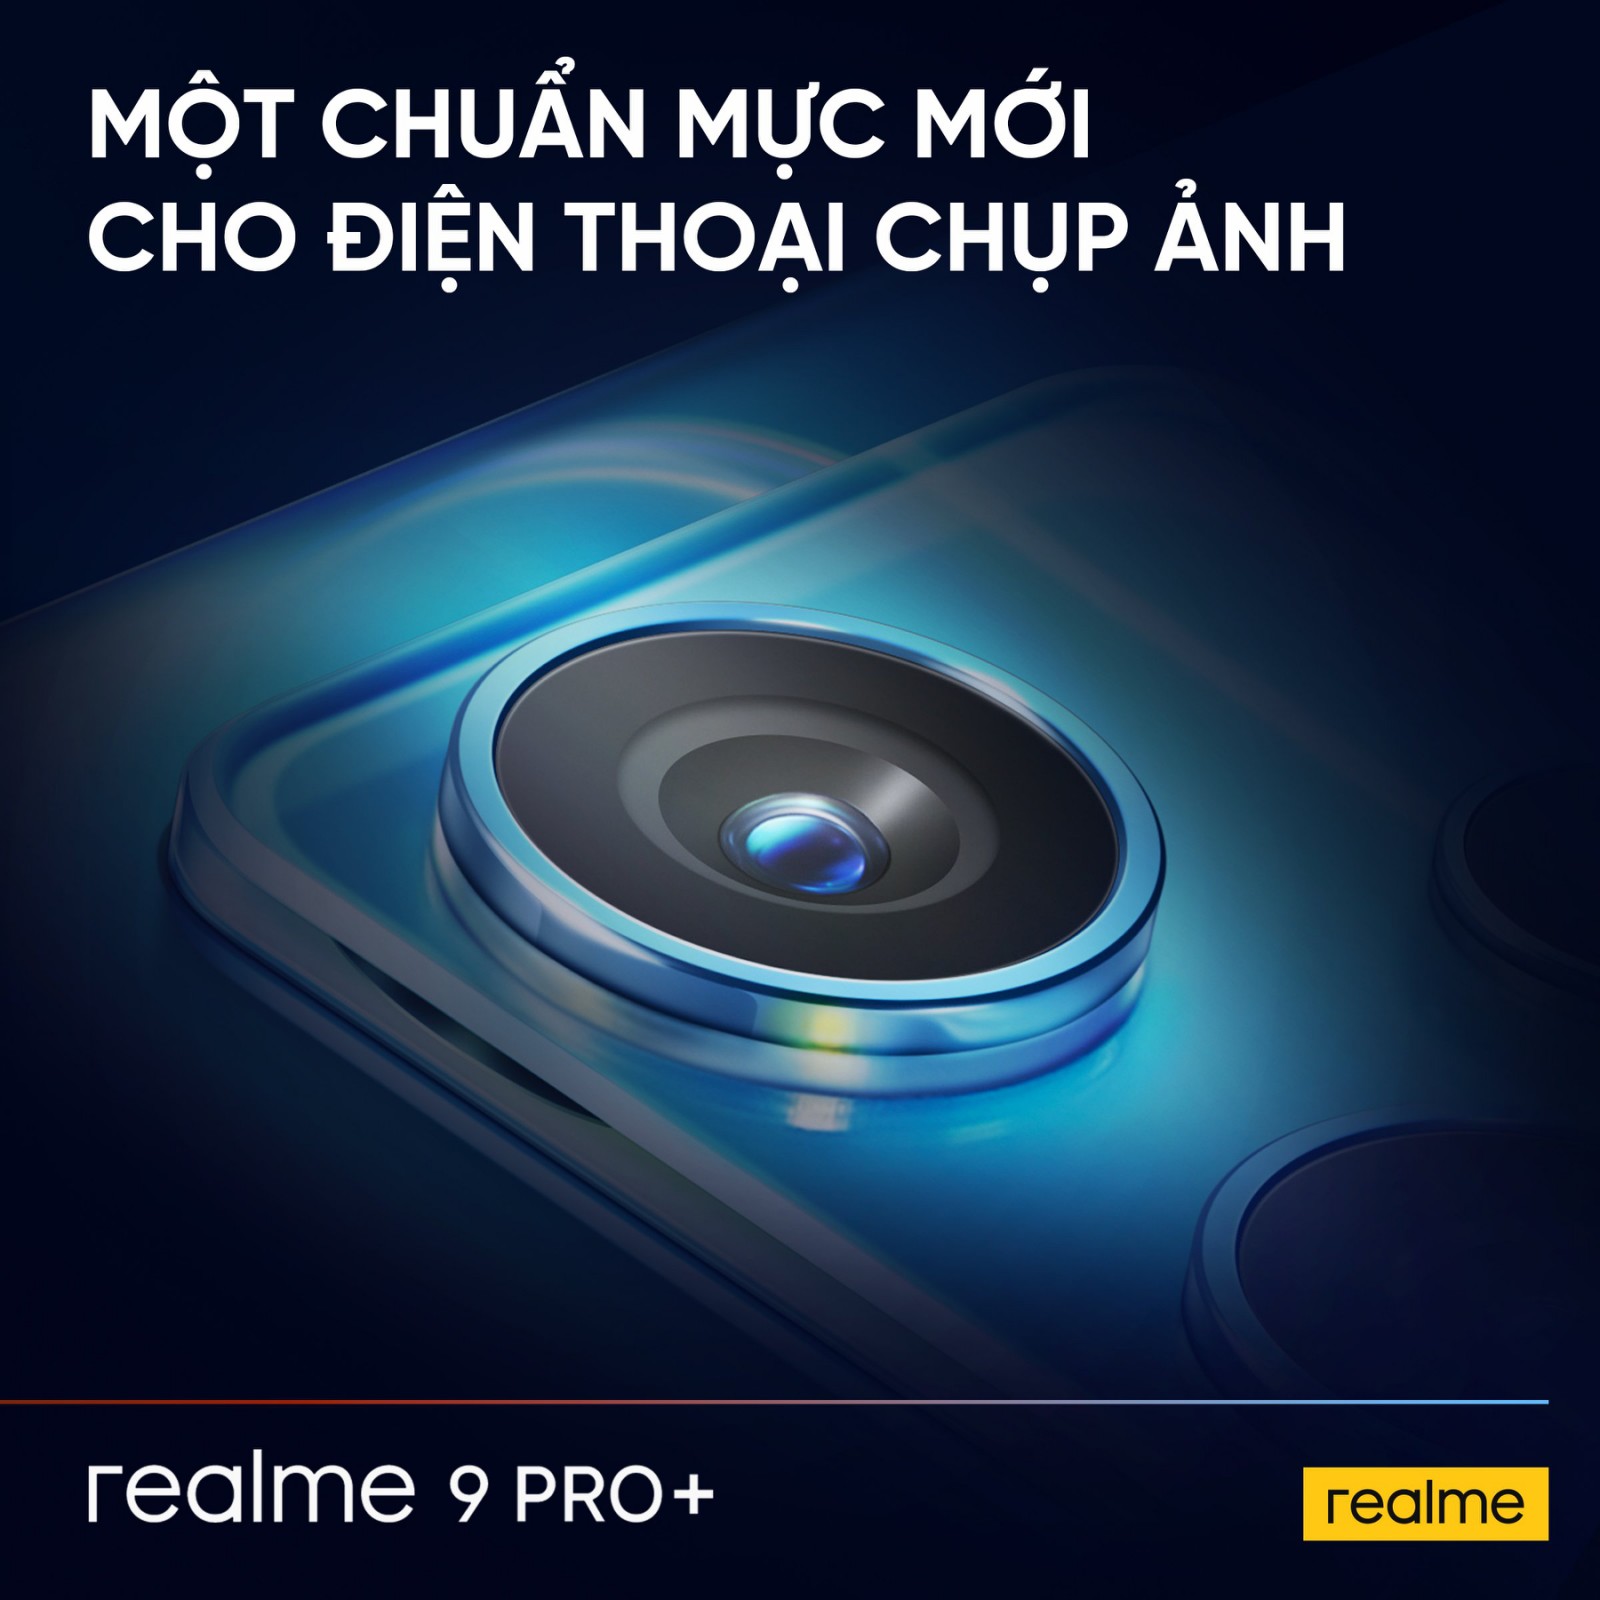 realme 9 Pro Series chuẩn bị ra mắt tại Việt Nam